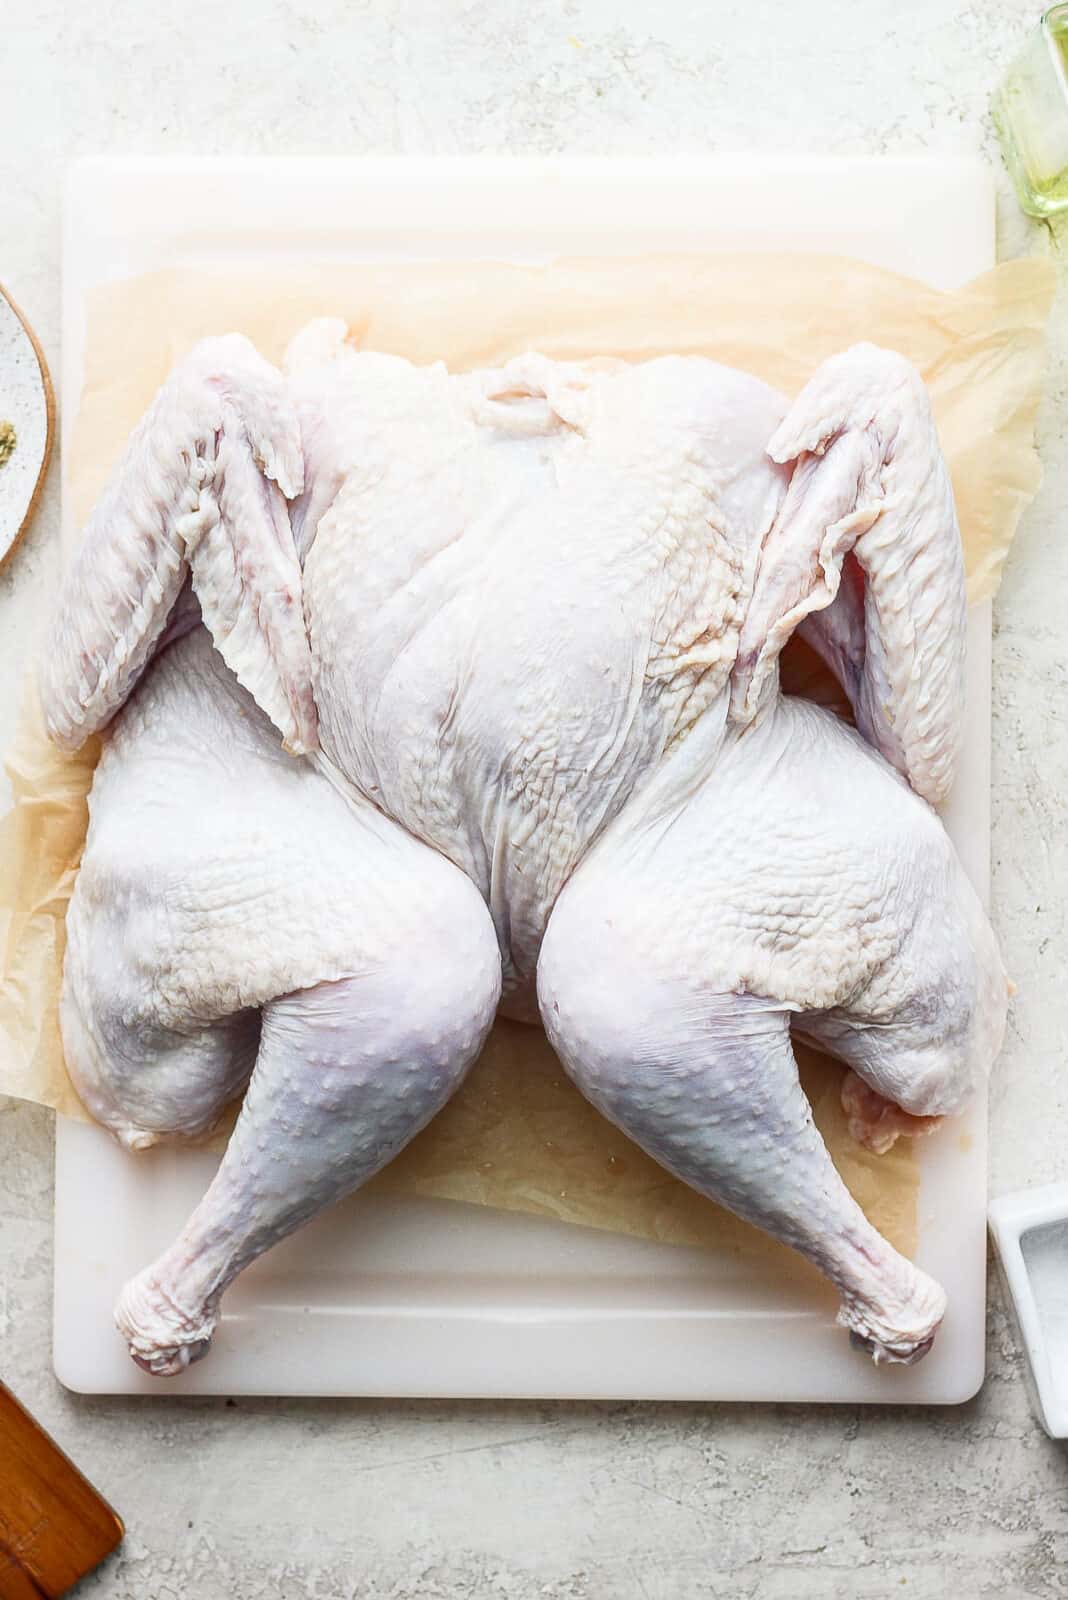 A spatchcock turkey on a cutting board.